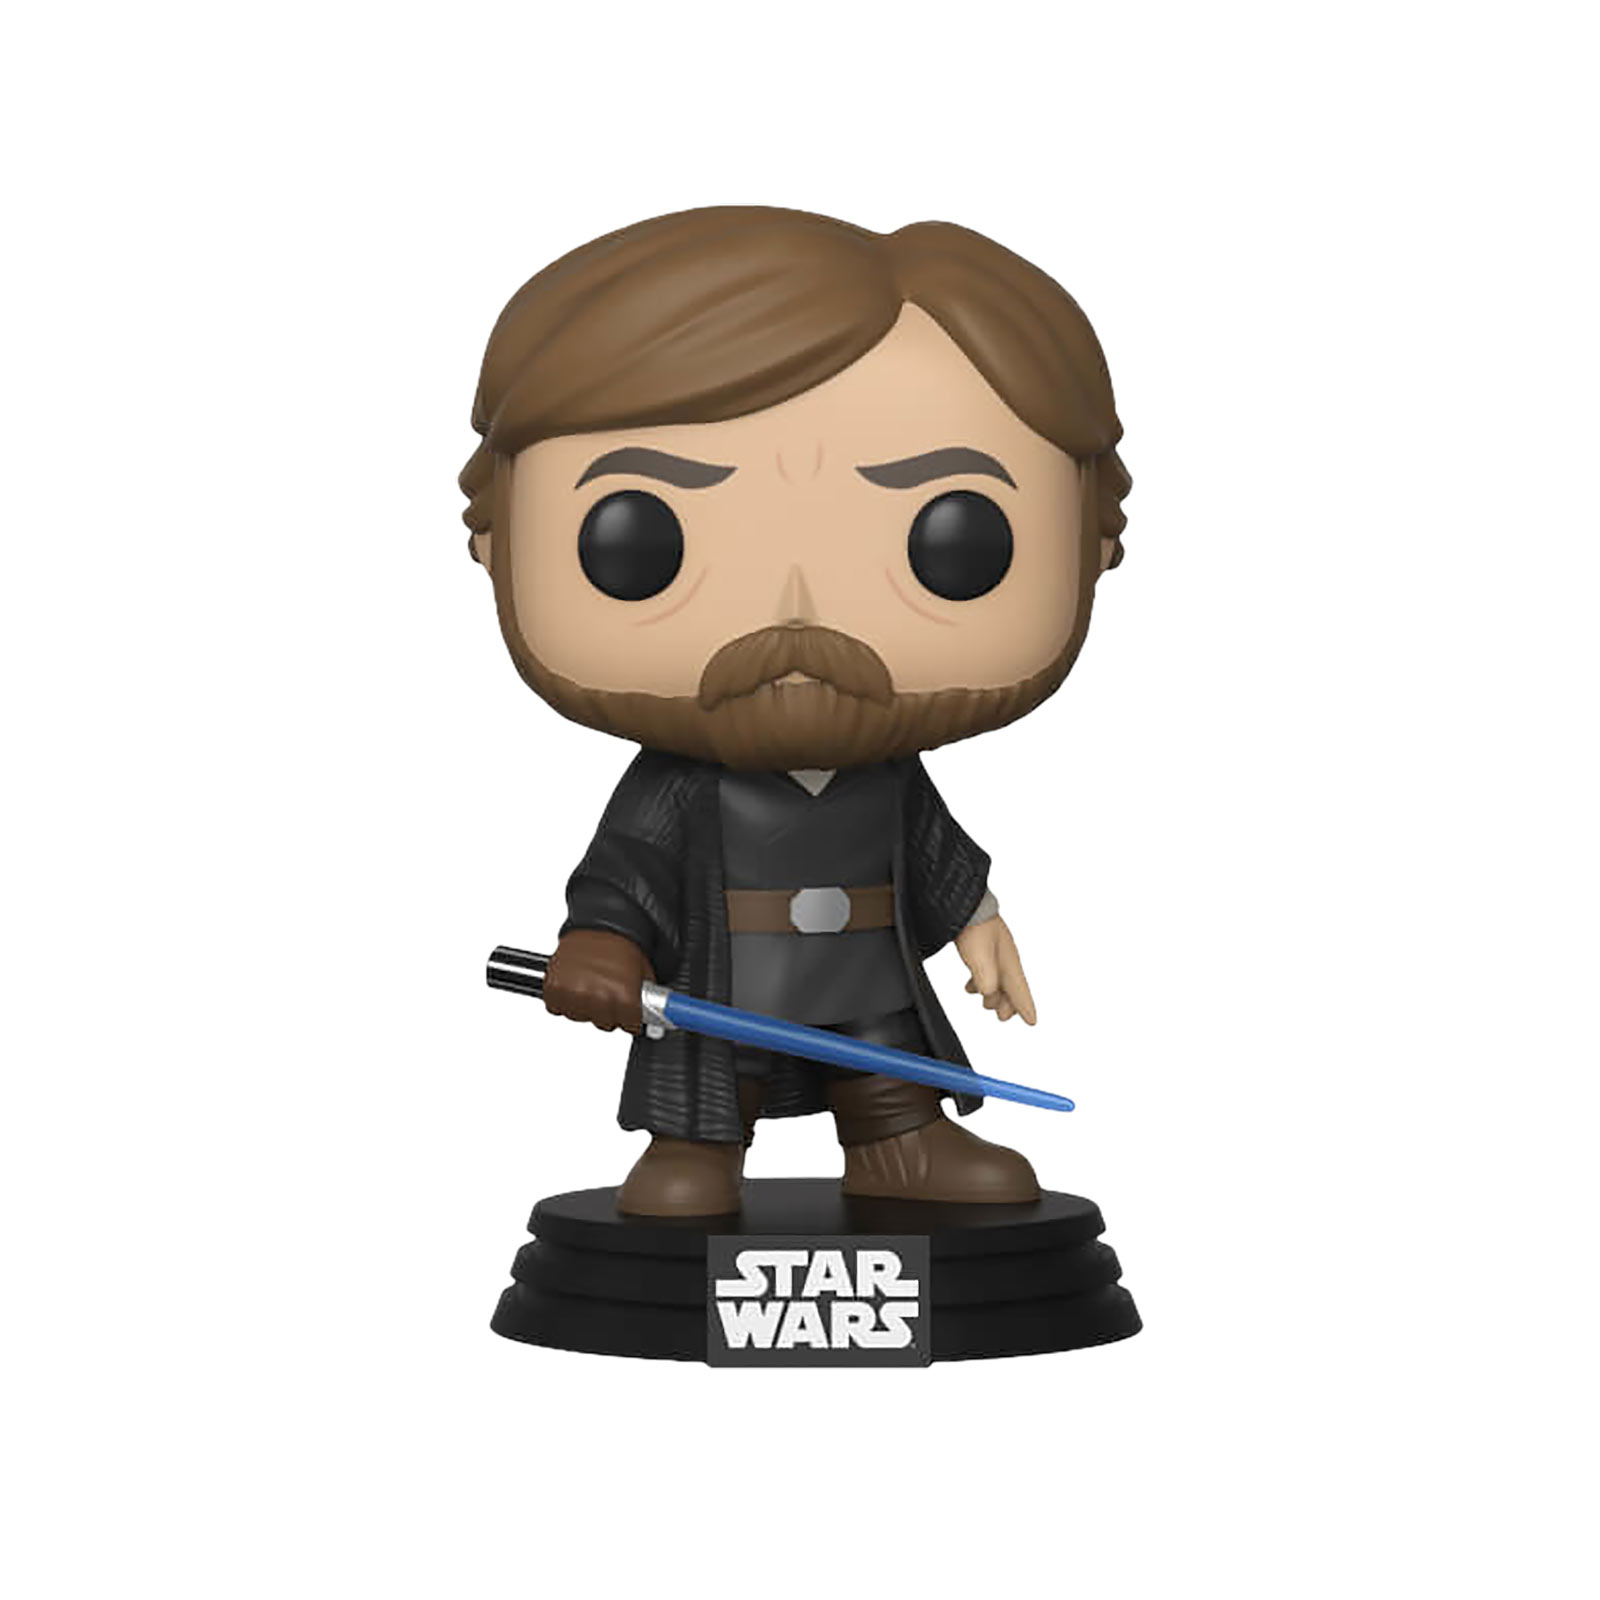 Star Wars - Luke with lightsaber Funko Pop bobblehead figure